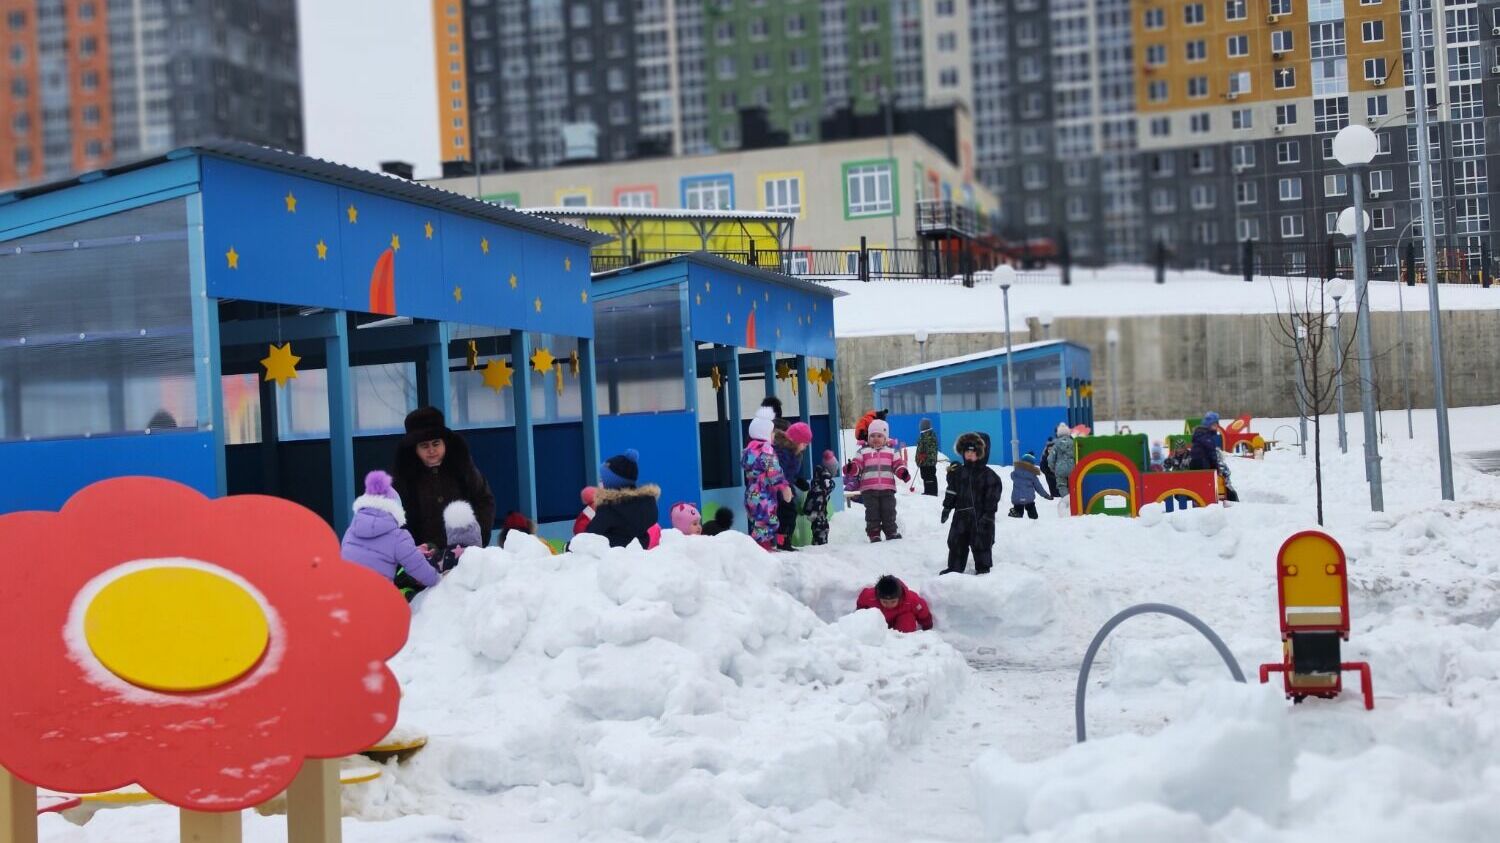 Детский сад на 280 мест построили в КМ Анкудиновский Парк